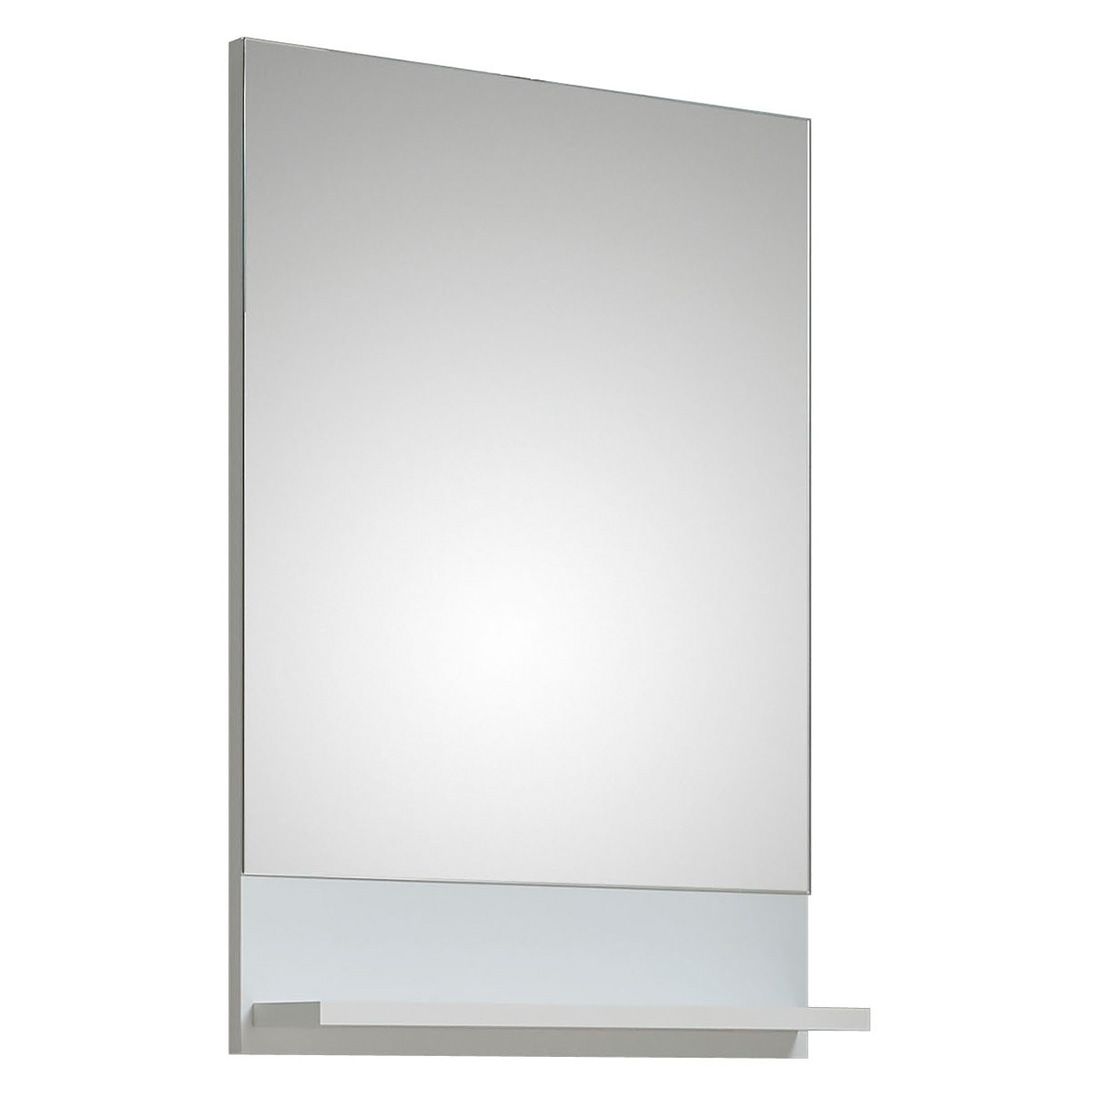 Pelipal Piolo Spiegel mit Ablage 50x10x70cm